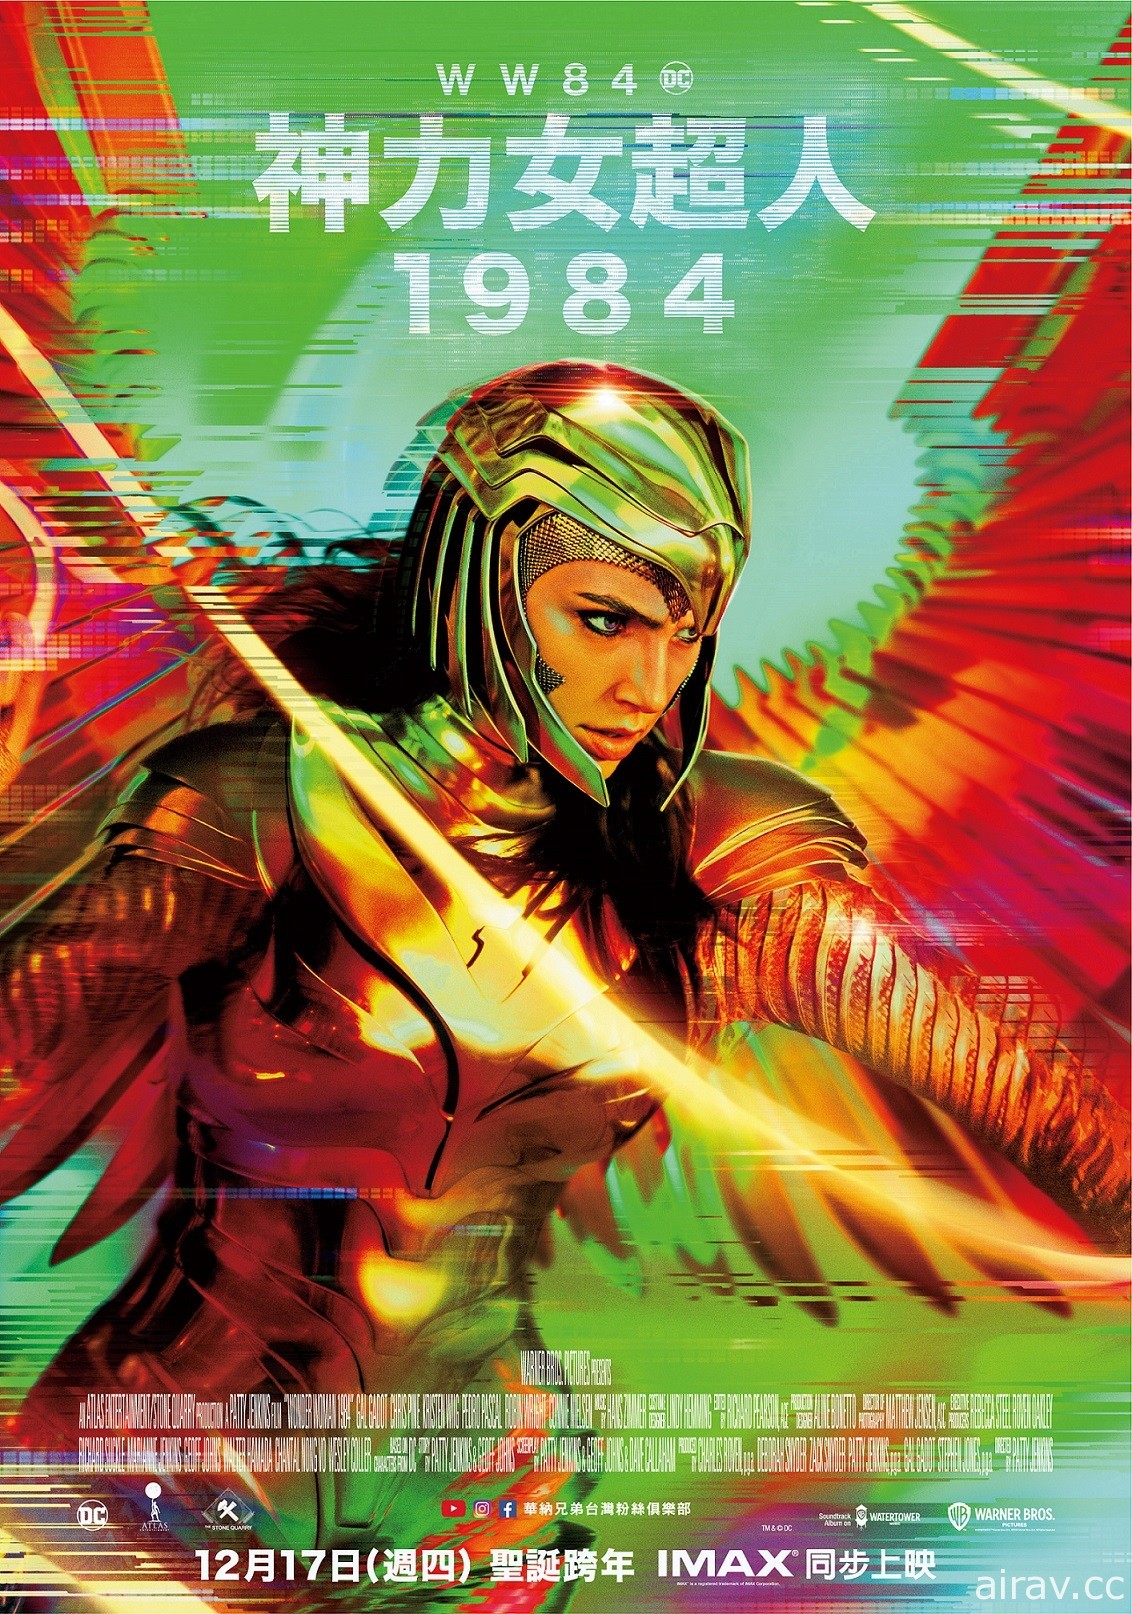 《神力女超人 1984》释出 CCXP 特别影片